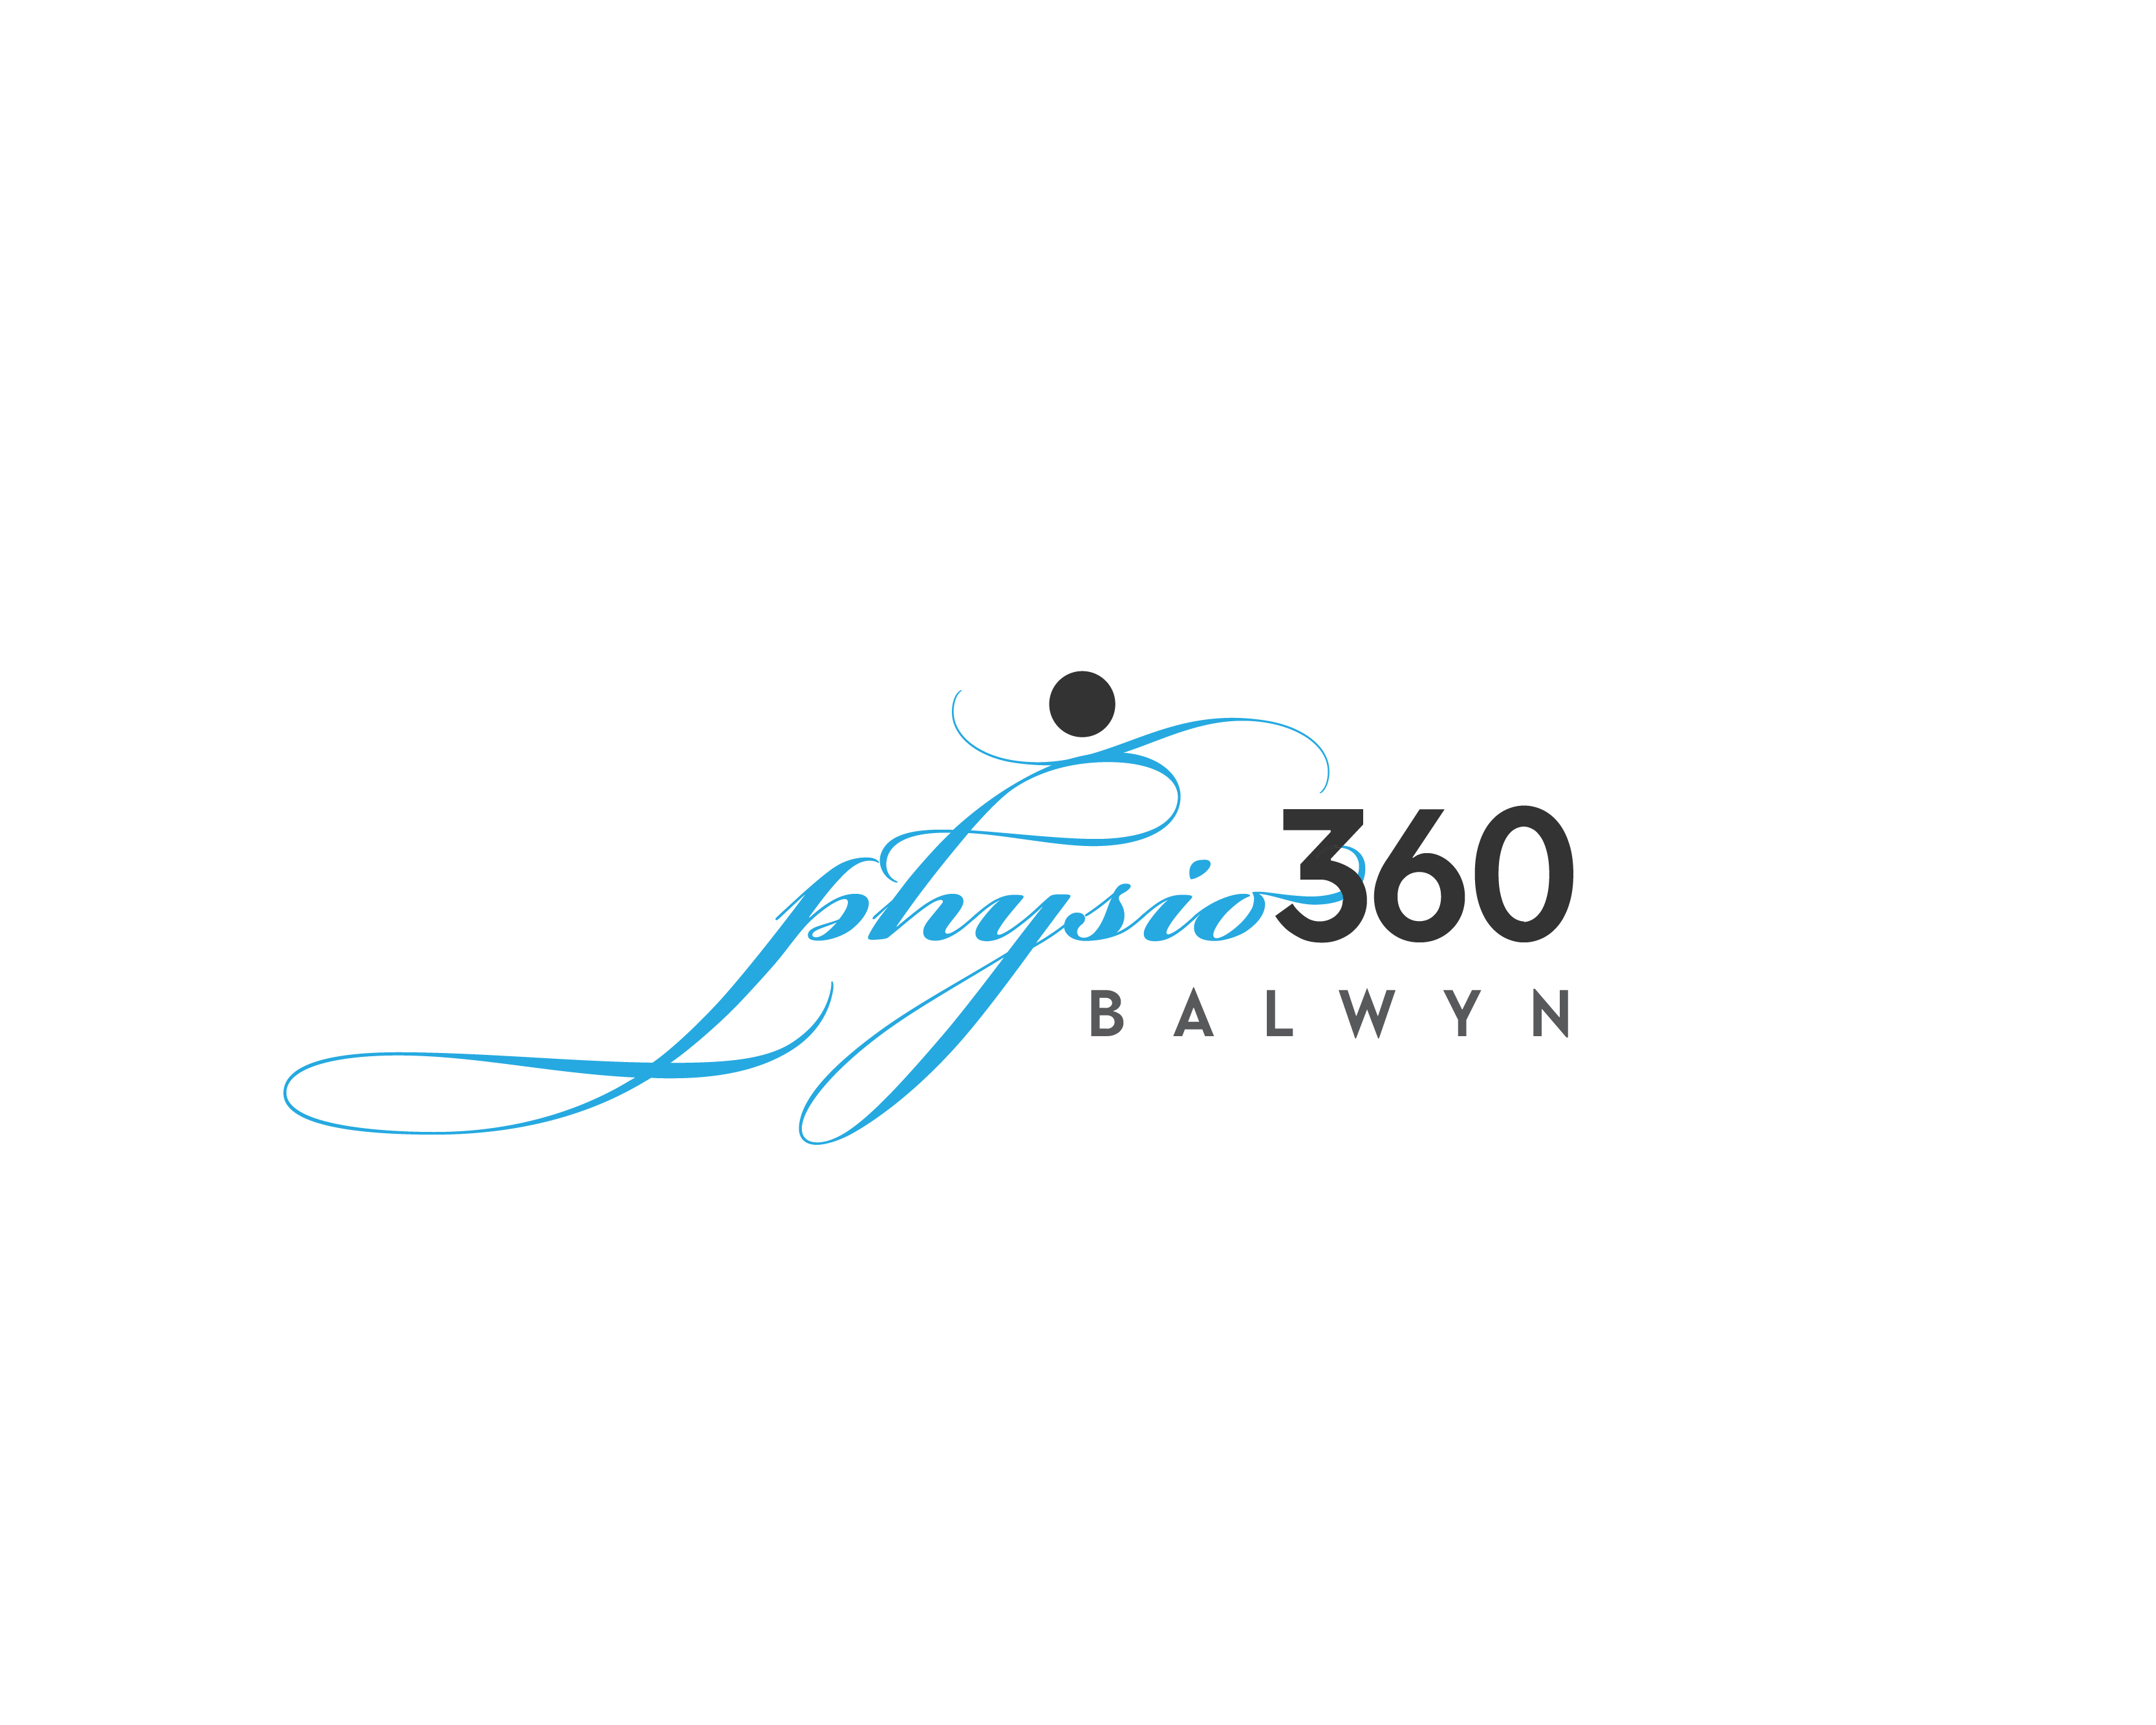 Logo Design entry 2385778 submitted by JOYMAHADIK to the Logo Design for PHYSIO 360 BALWYN run by shar108